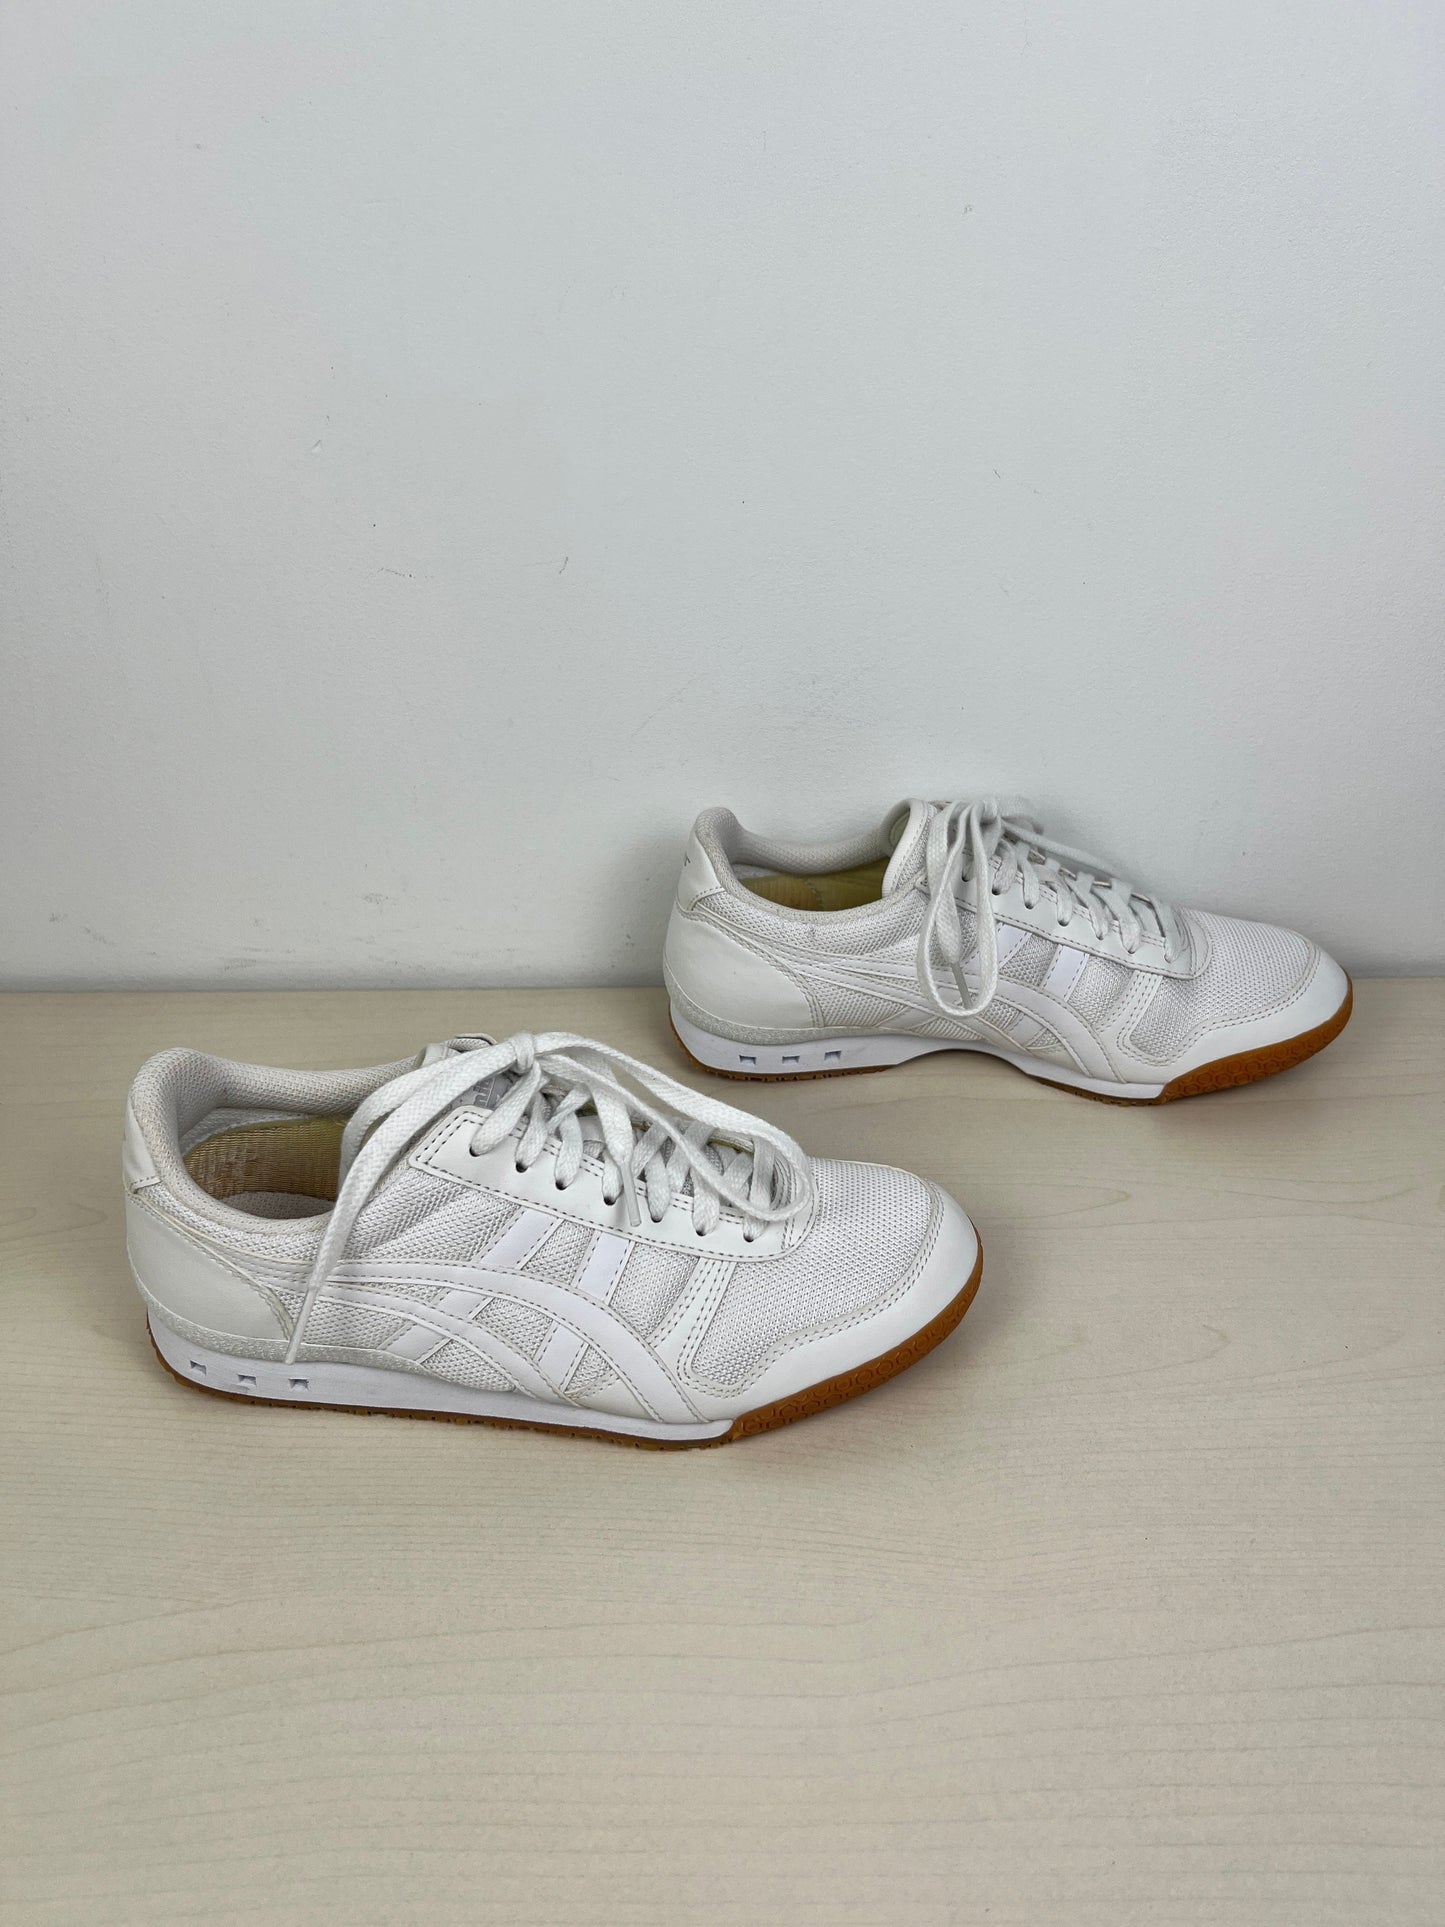 White Shoes Athletic Onitsuka, Size 5